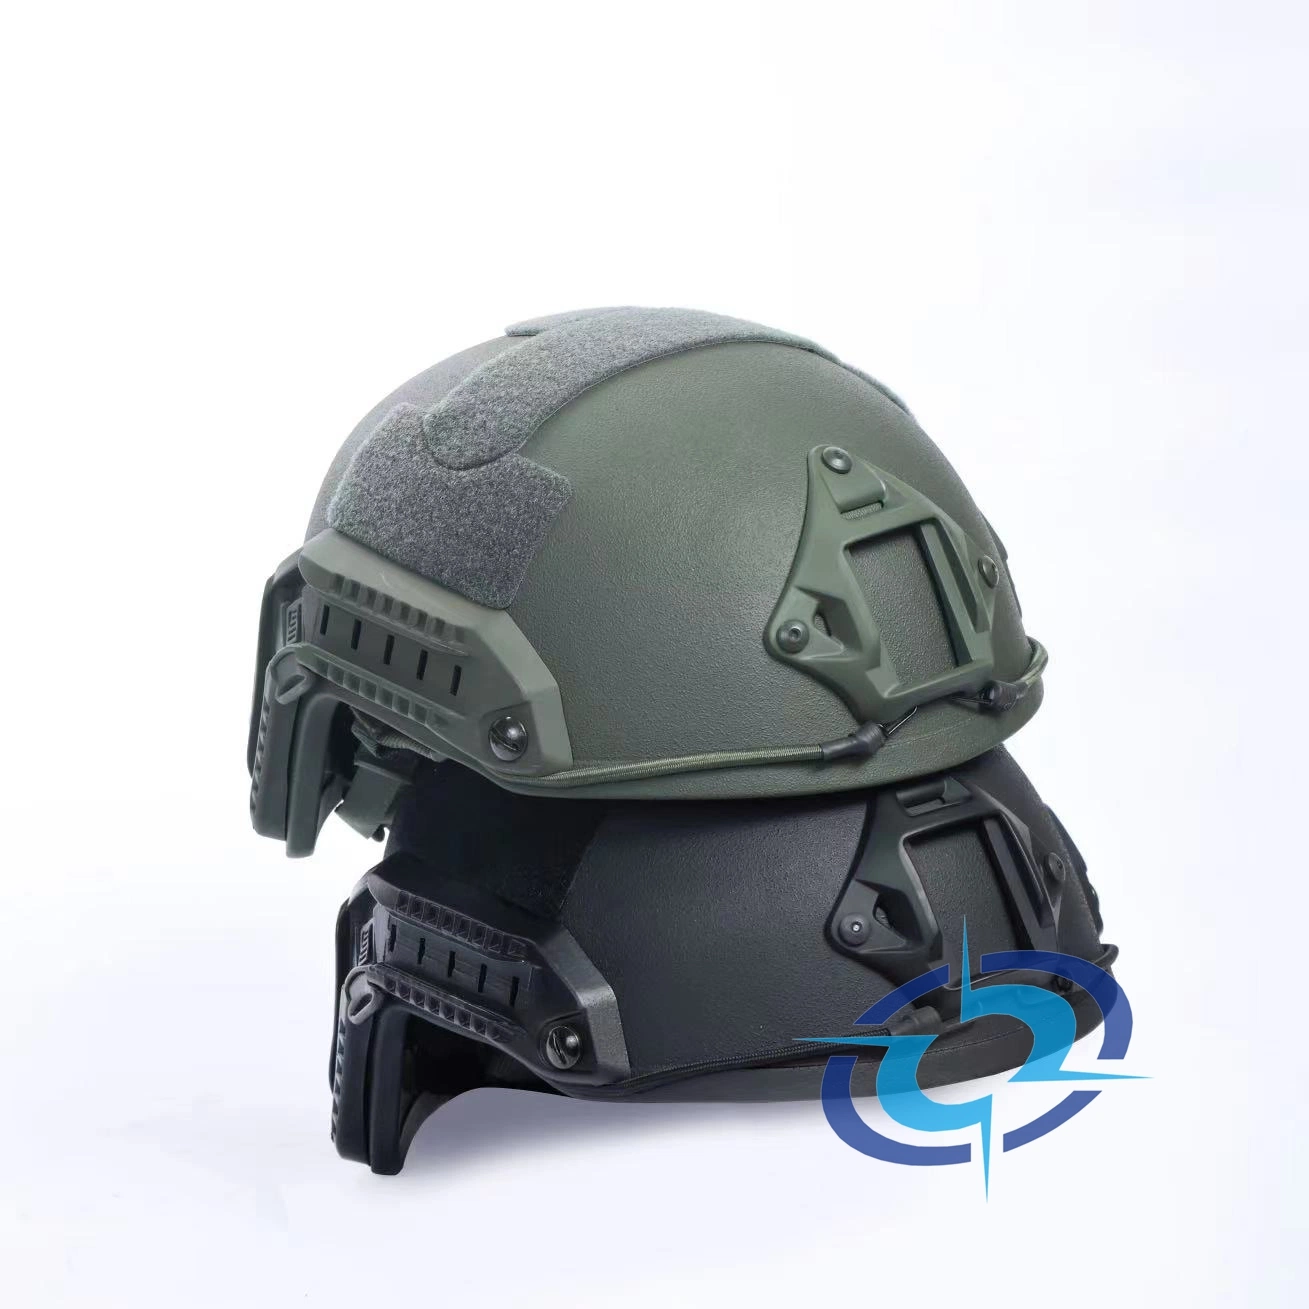 FAST Style Helmet военный пуленепробиваемый шлем с высокой баллистической производительностью